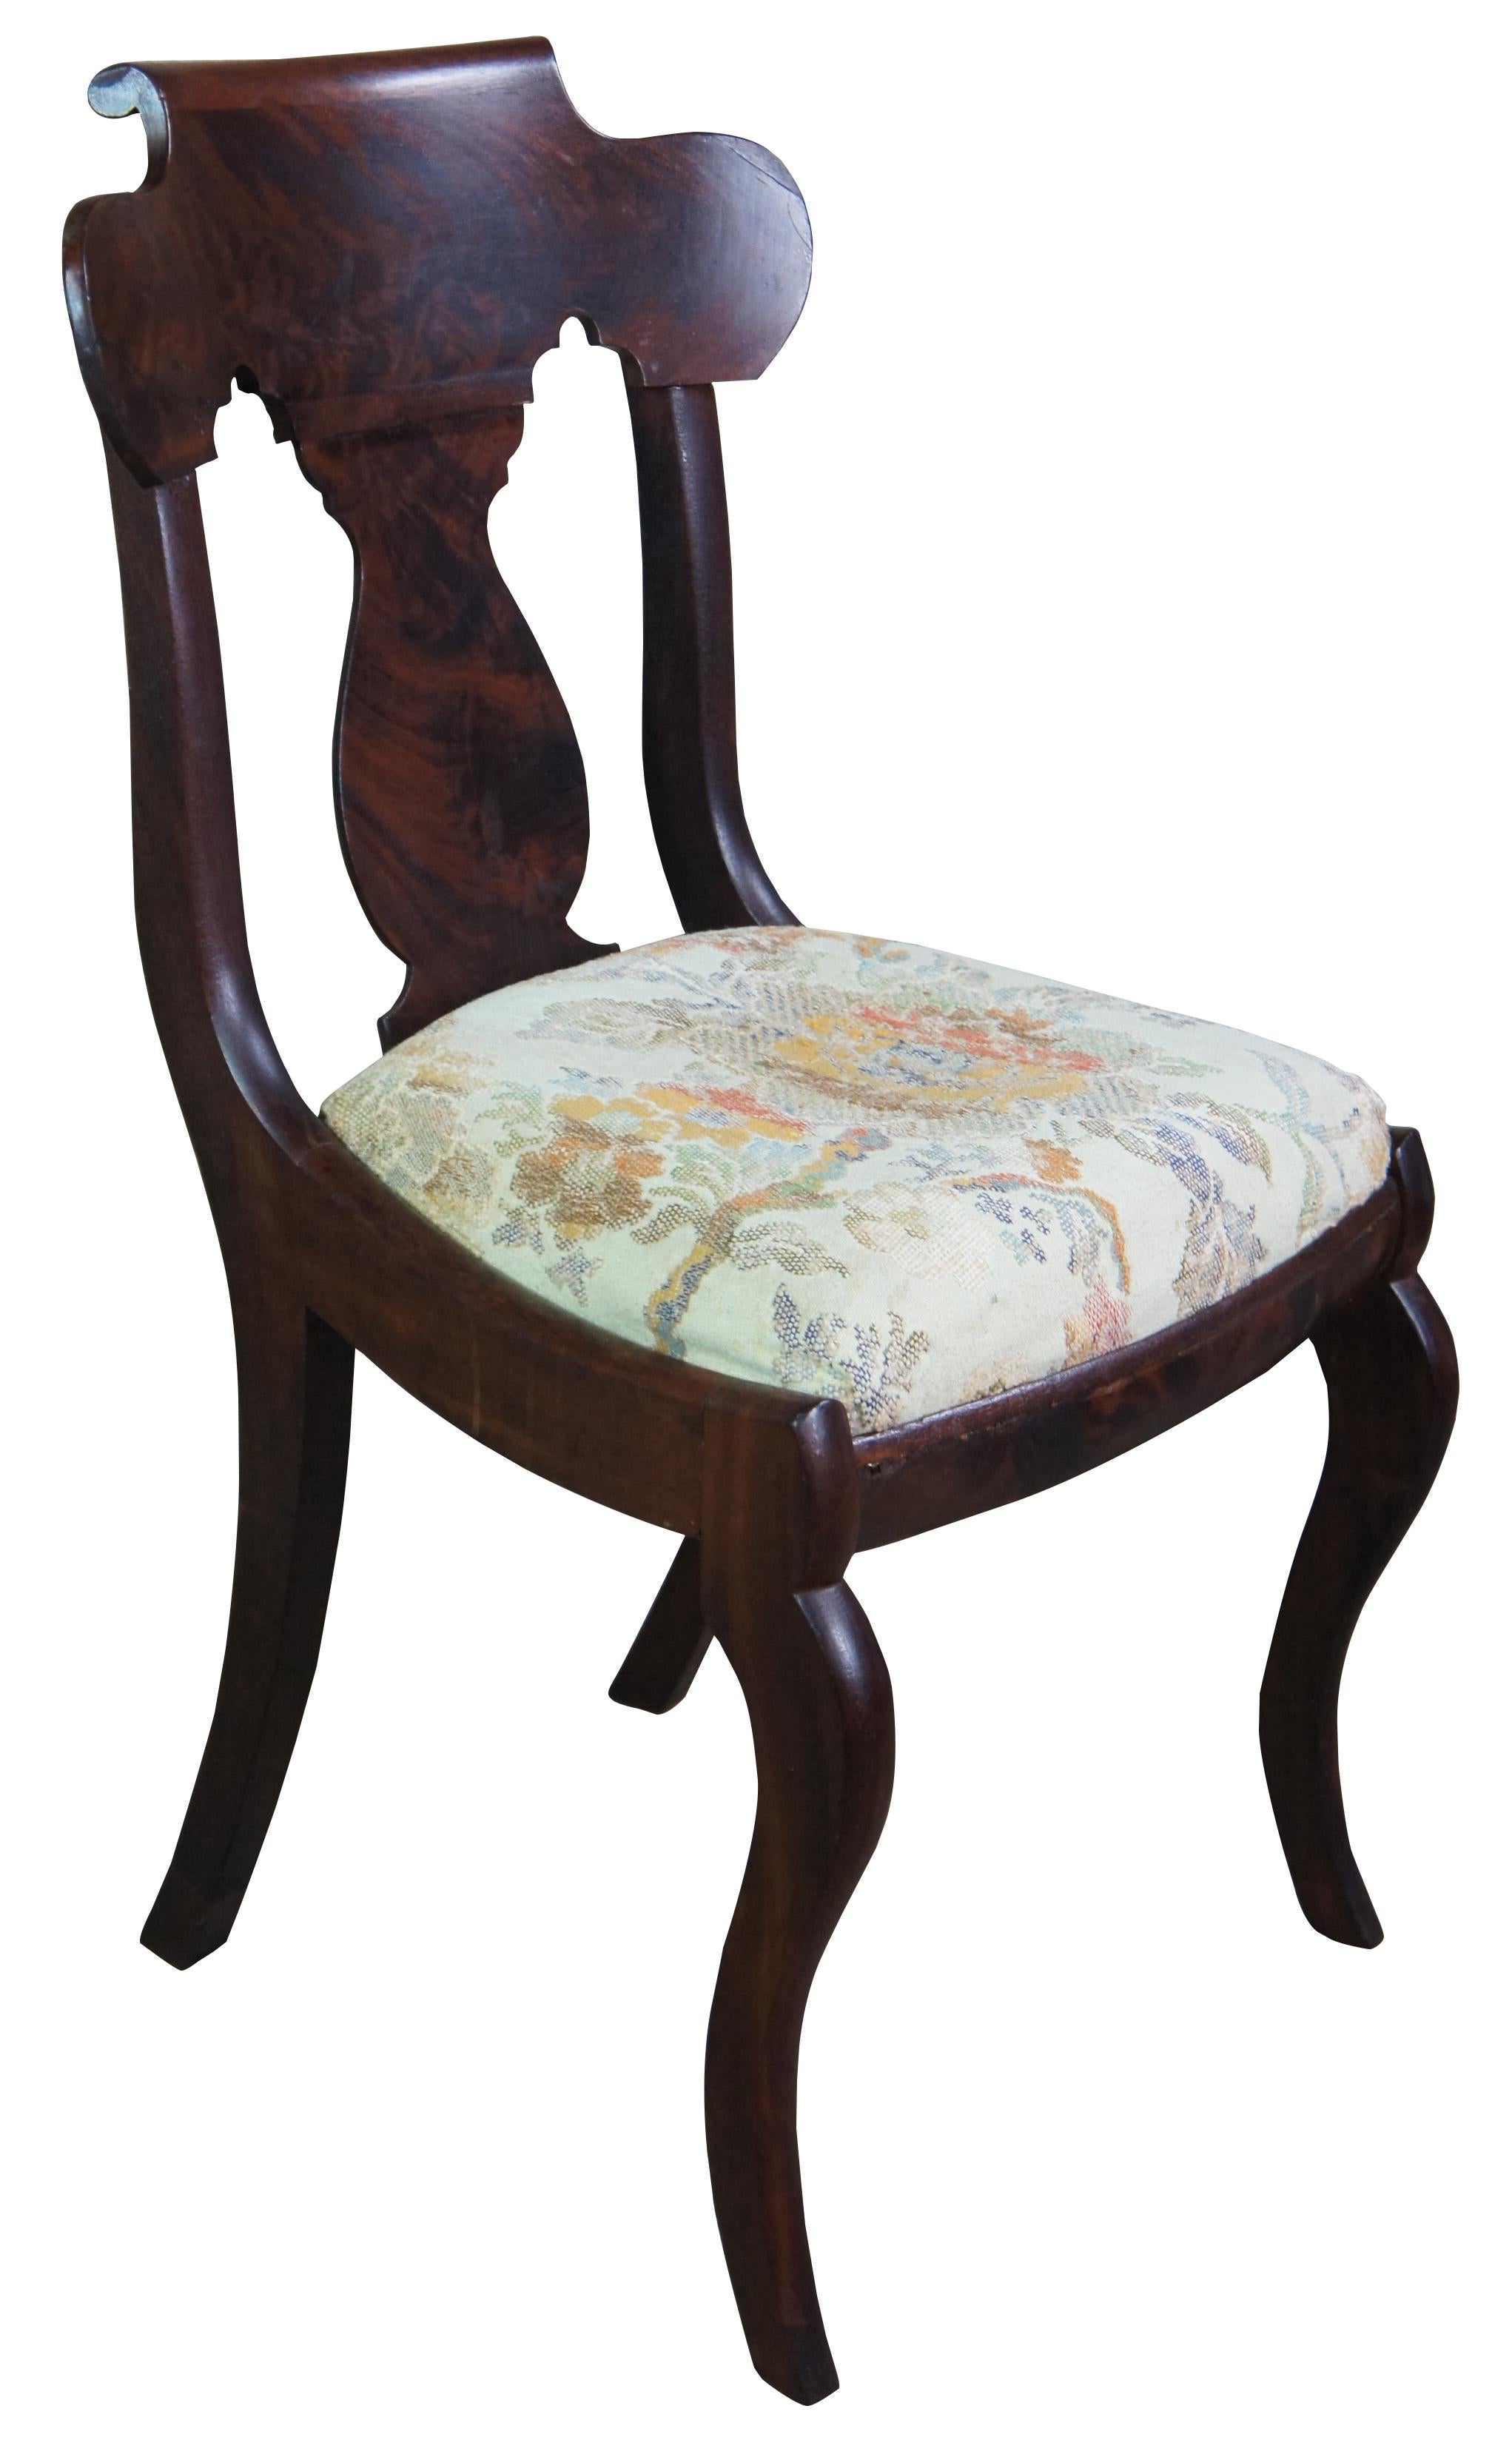 Ancienne chaise de salon, de vanité ou de salle à manger latérale de style Empire américain. Fabriqué en acajou flammé, il présente une forme serpentine avec un dossier en forme d'urne, une assise en toile de jute et des pieds serpentins.
 